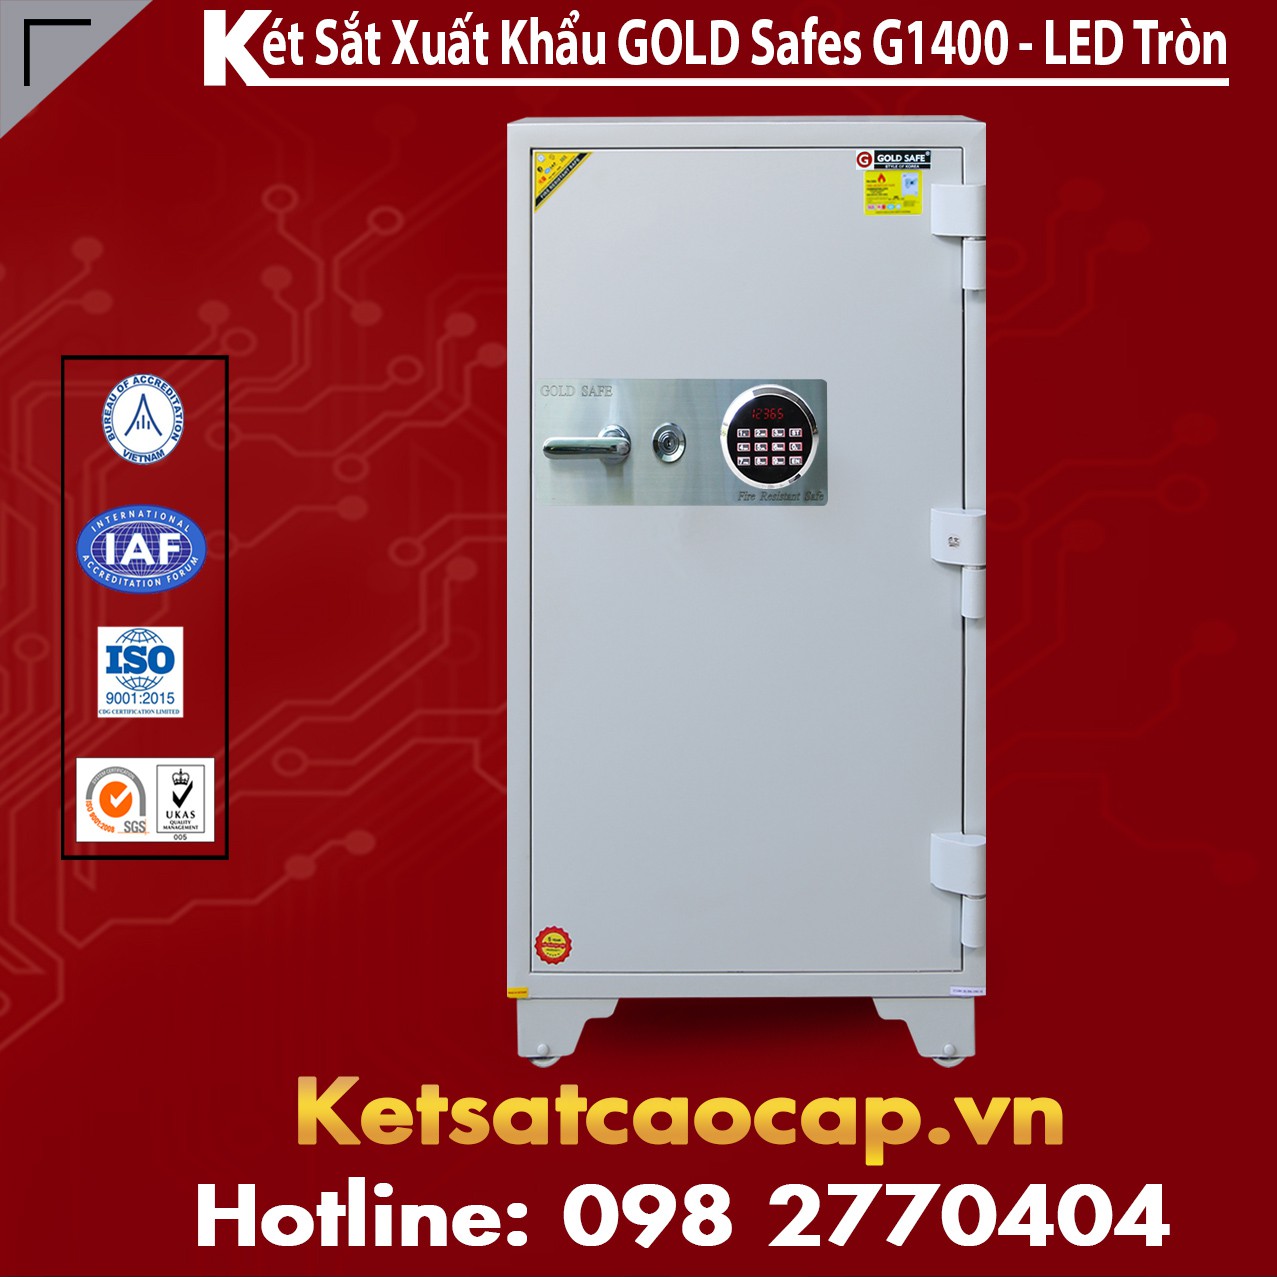 Két Sắt Phát Lộc GOLD SAFES GC1400 LED Tròn